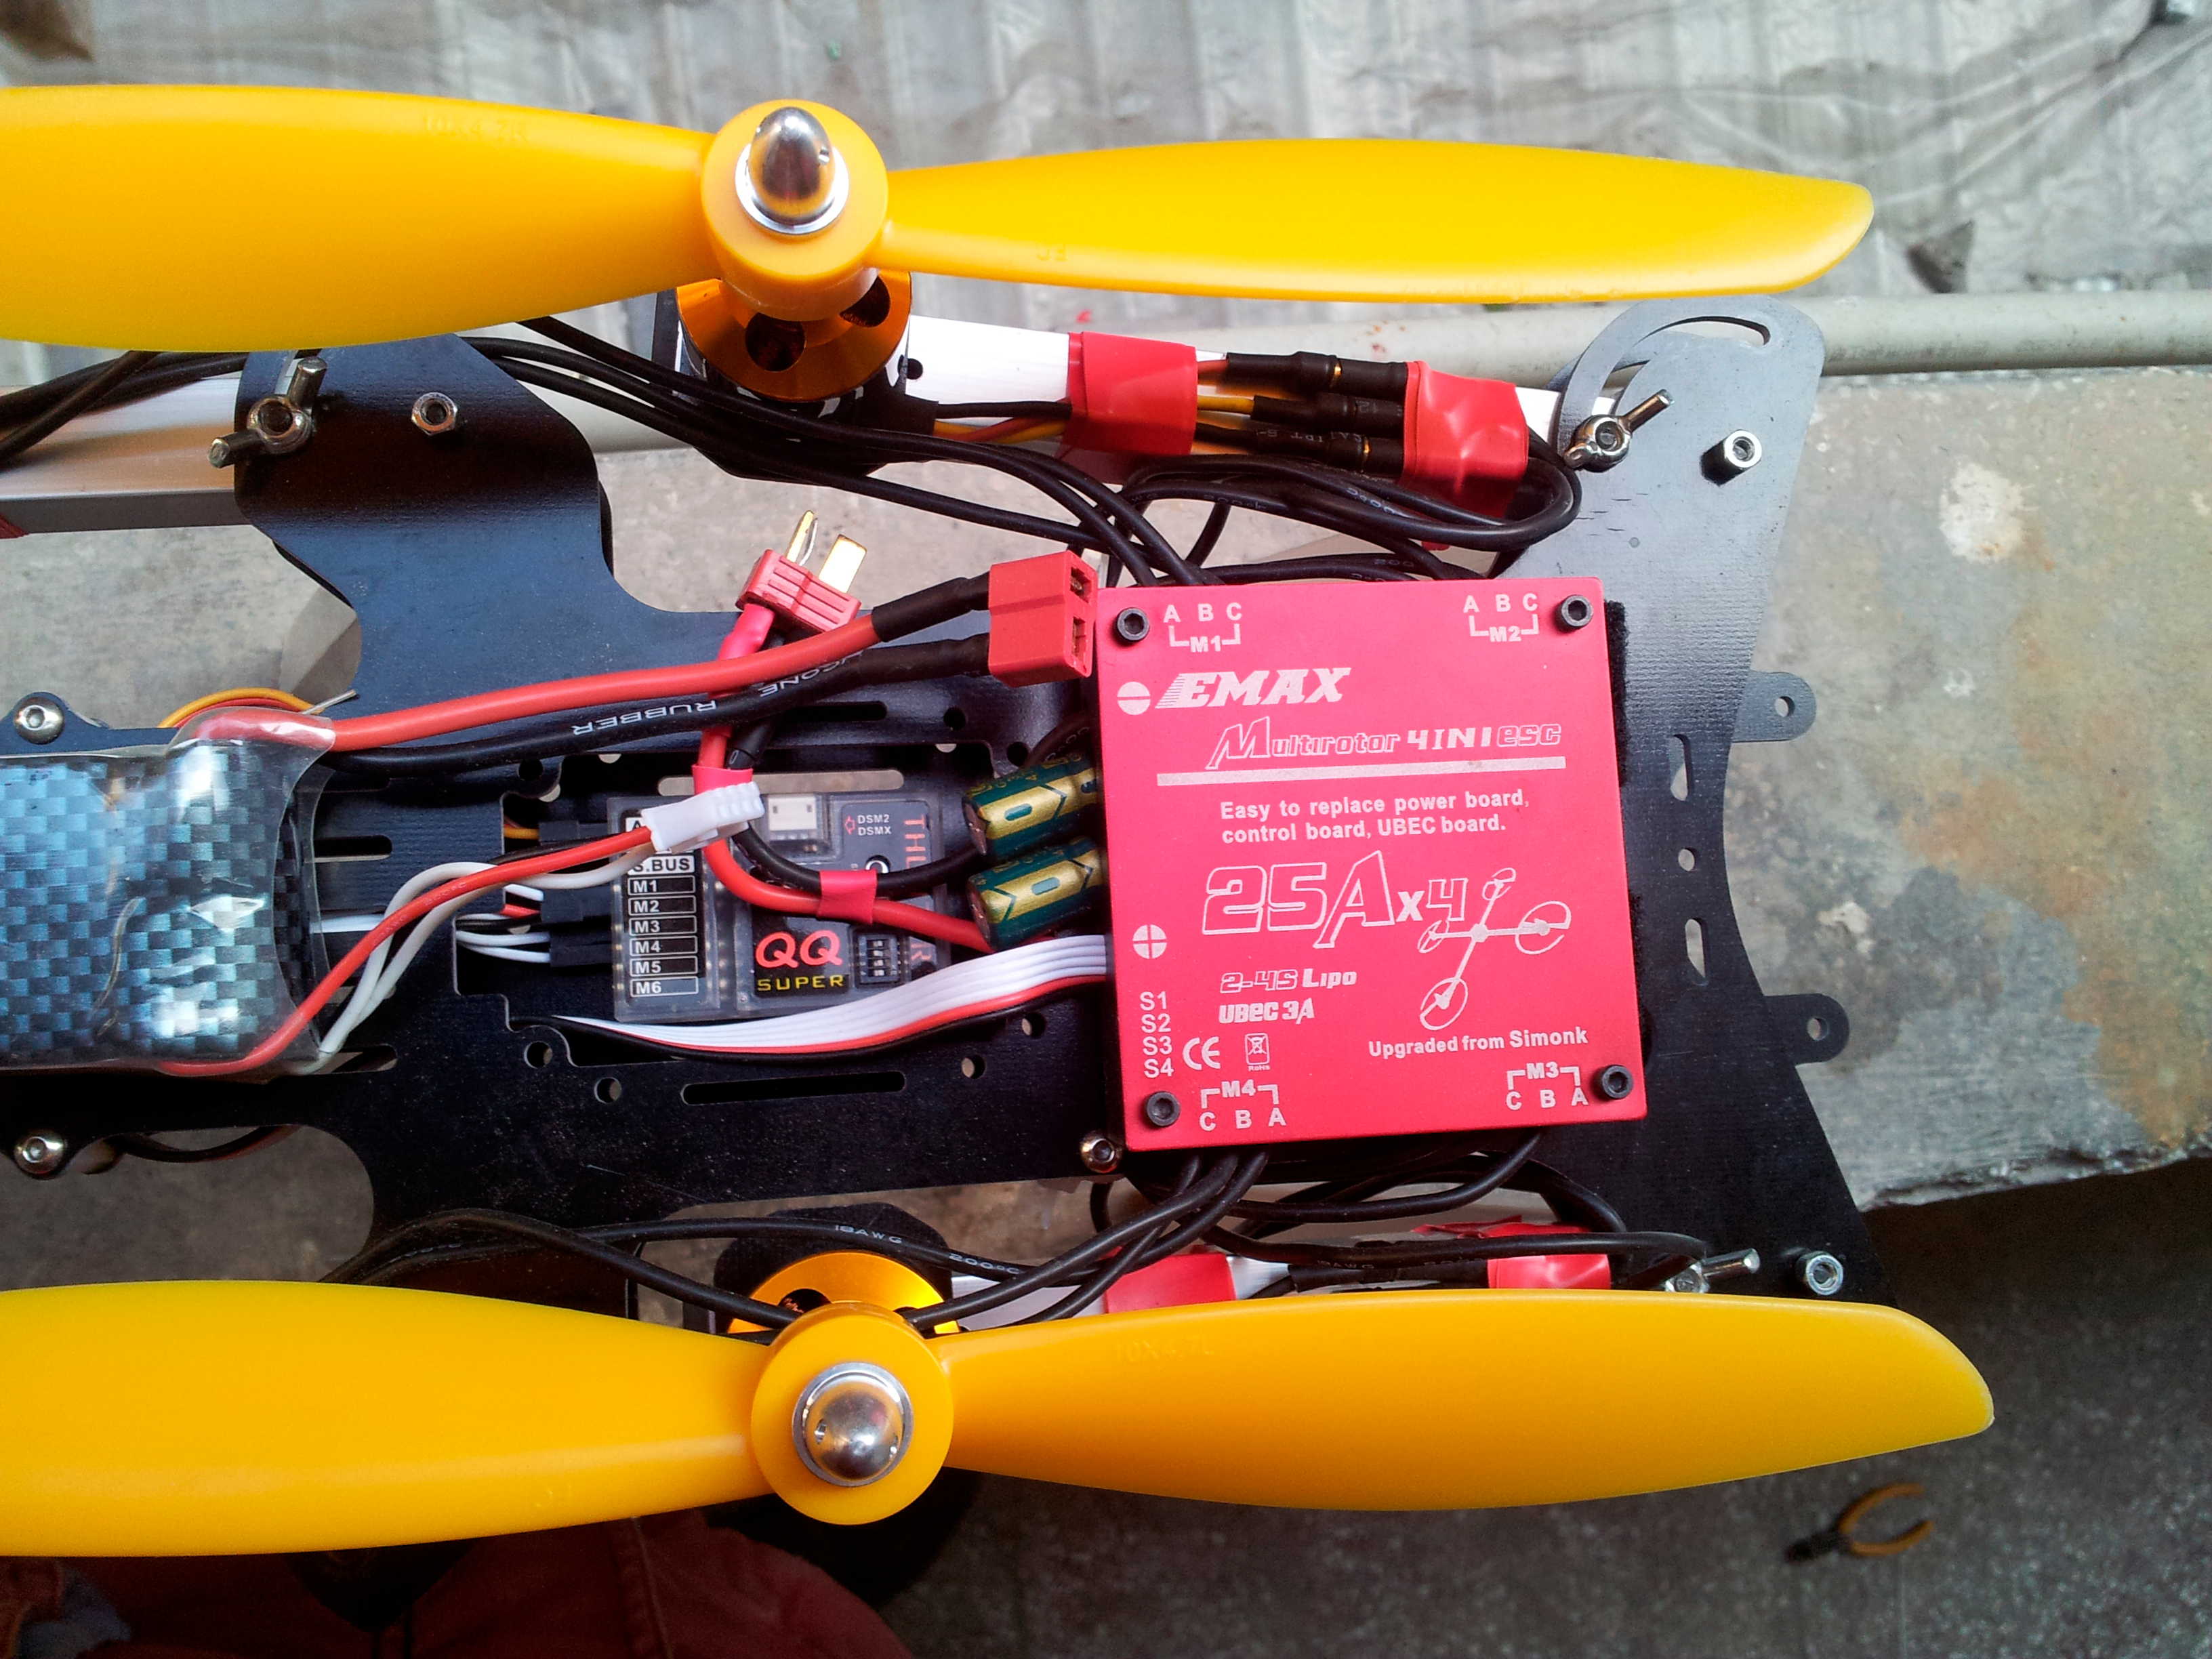 初试QQ飞控 电池,飞控,电调,电机,遥控器 作者:汶川热带鱼 6567 